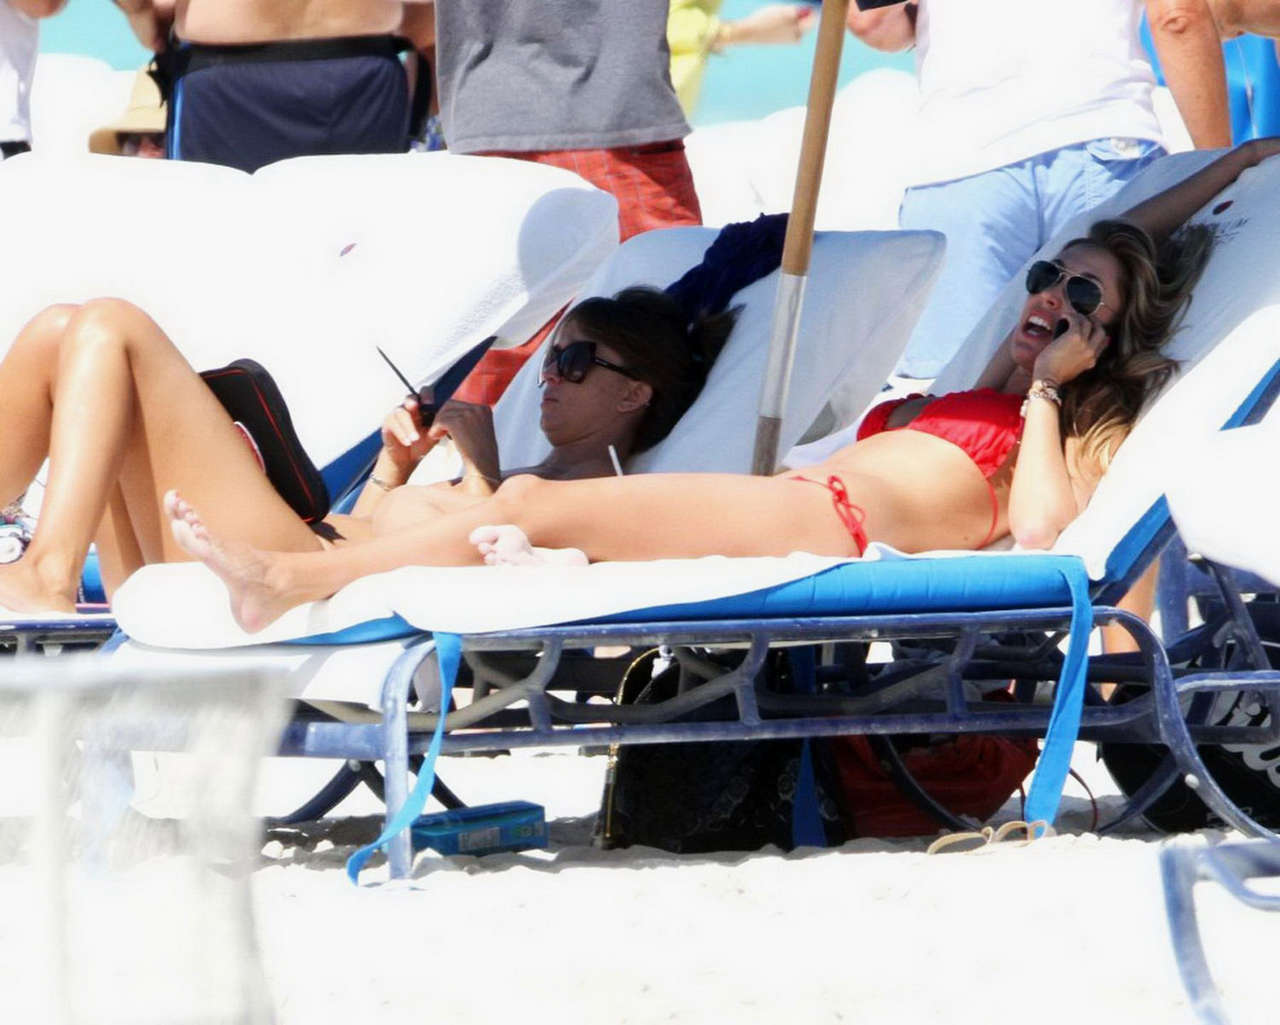 Lauren Stoner Bikini Beach Miami